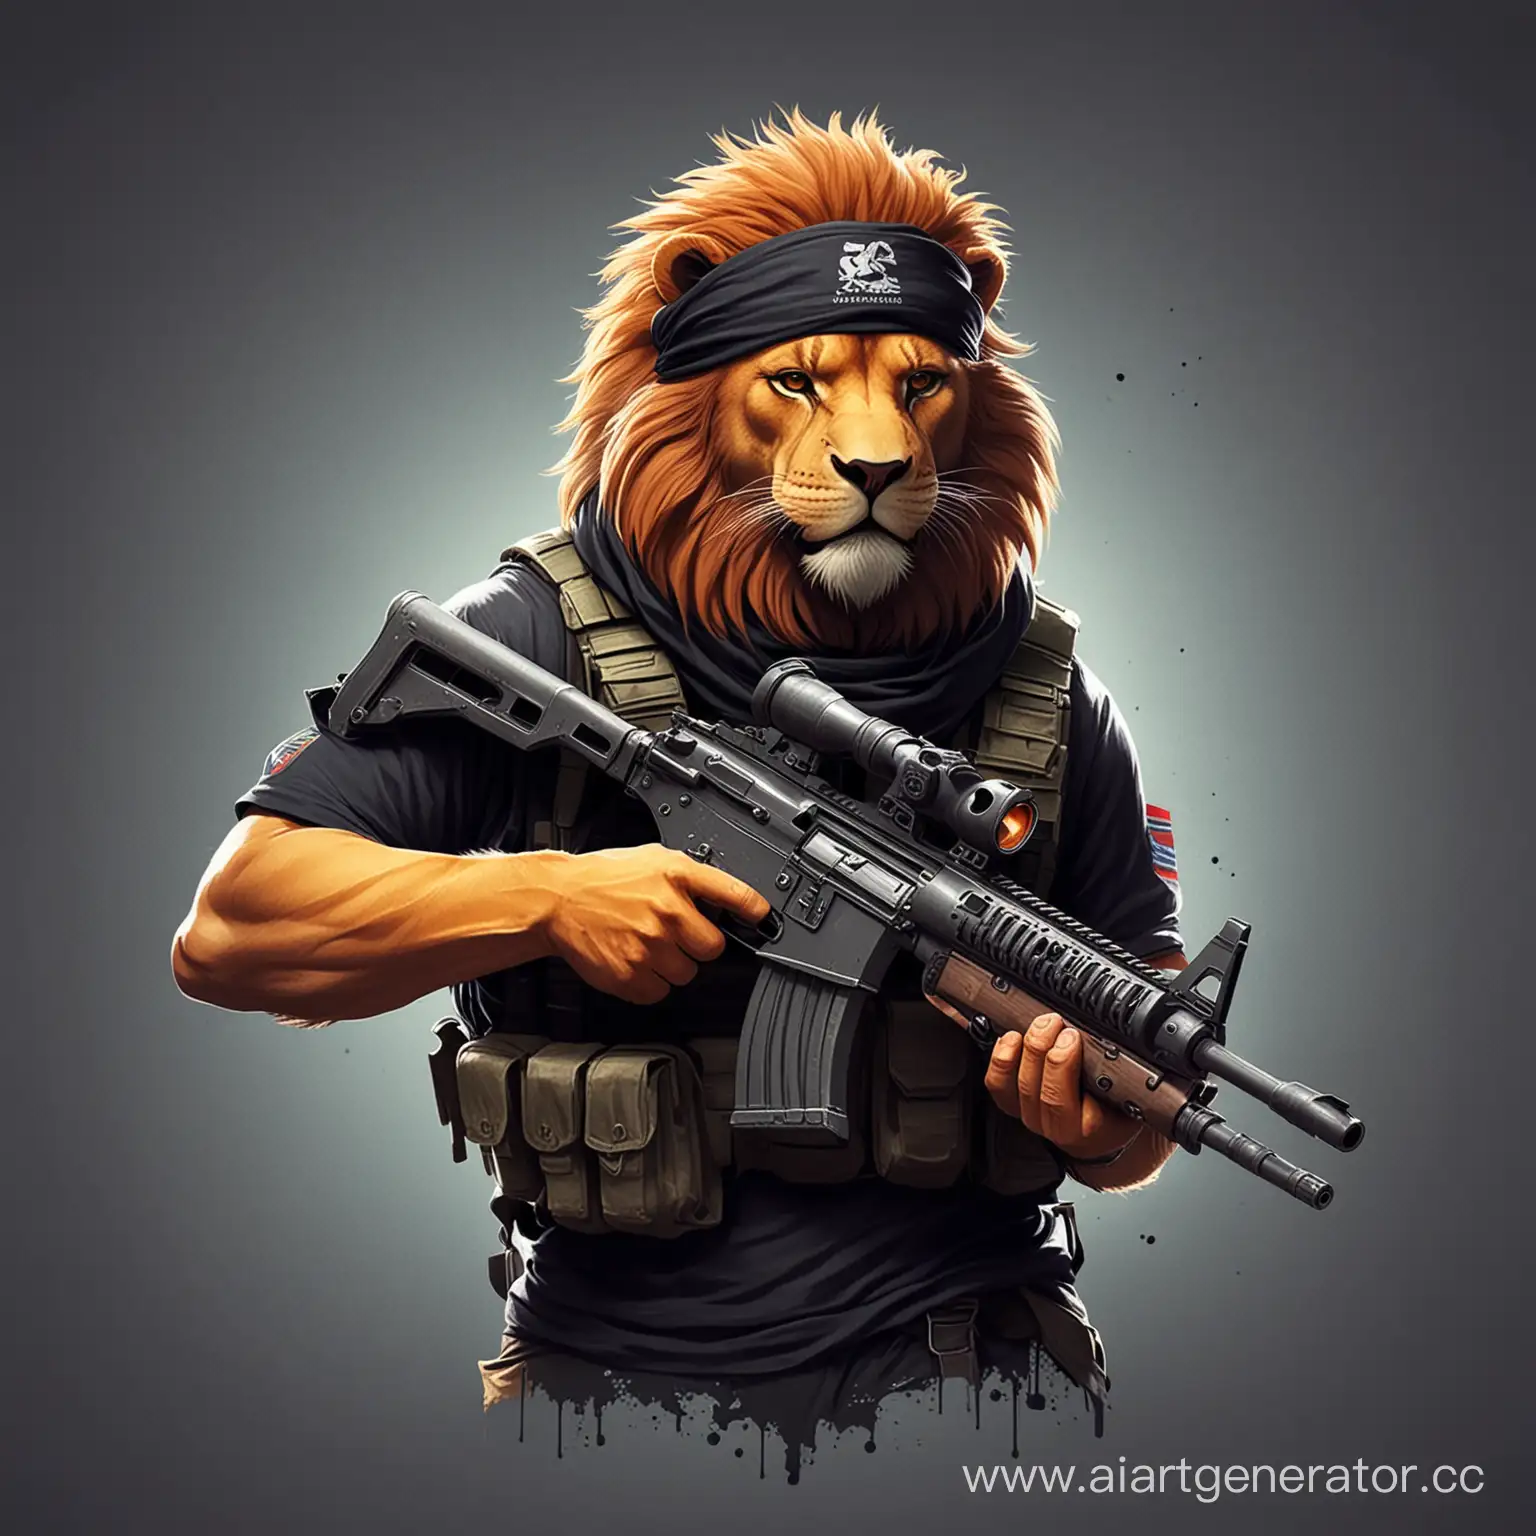 Создай минималистичную и красочную аватарку для игры в "Counter Strike".
Изобрази льва в черной бандане, с тяжёлым пулеметом.